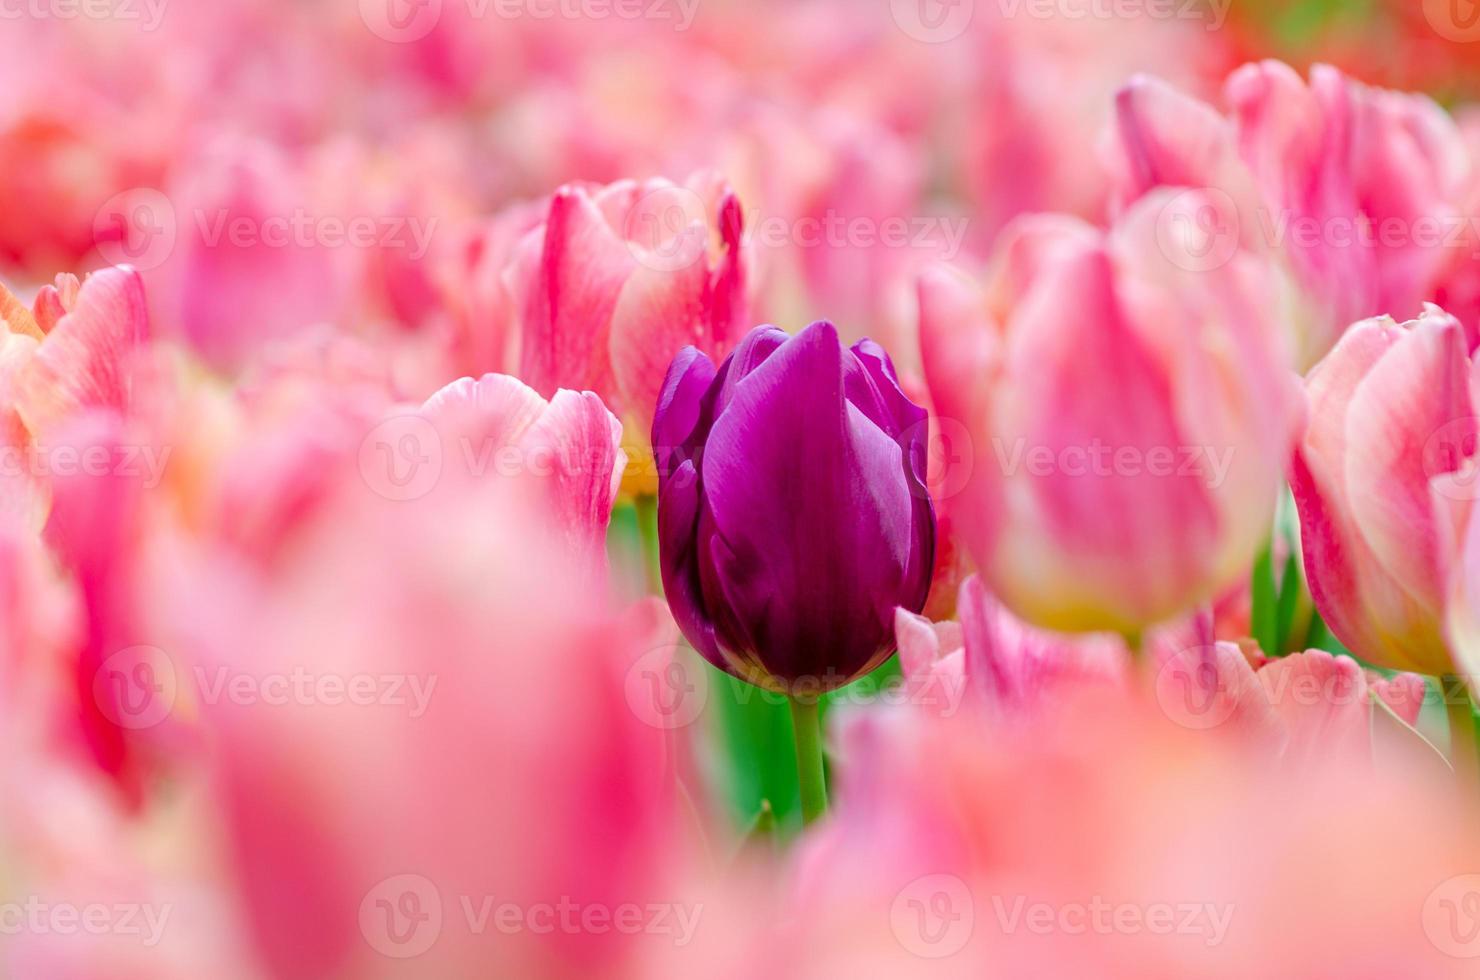 les tulipes violettes font partie des tulipes roses. photo